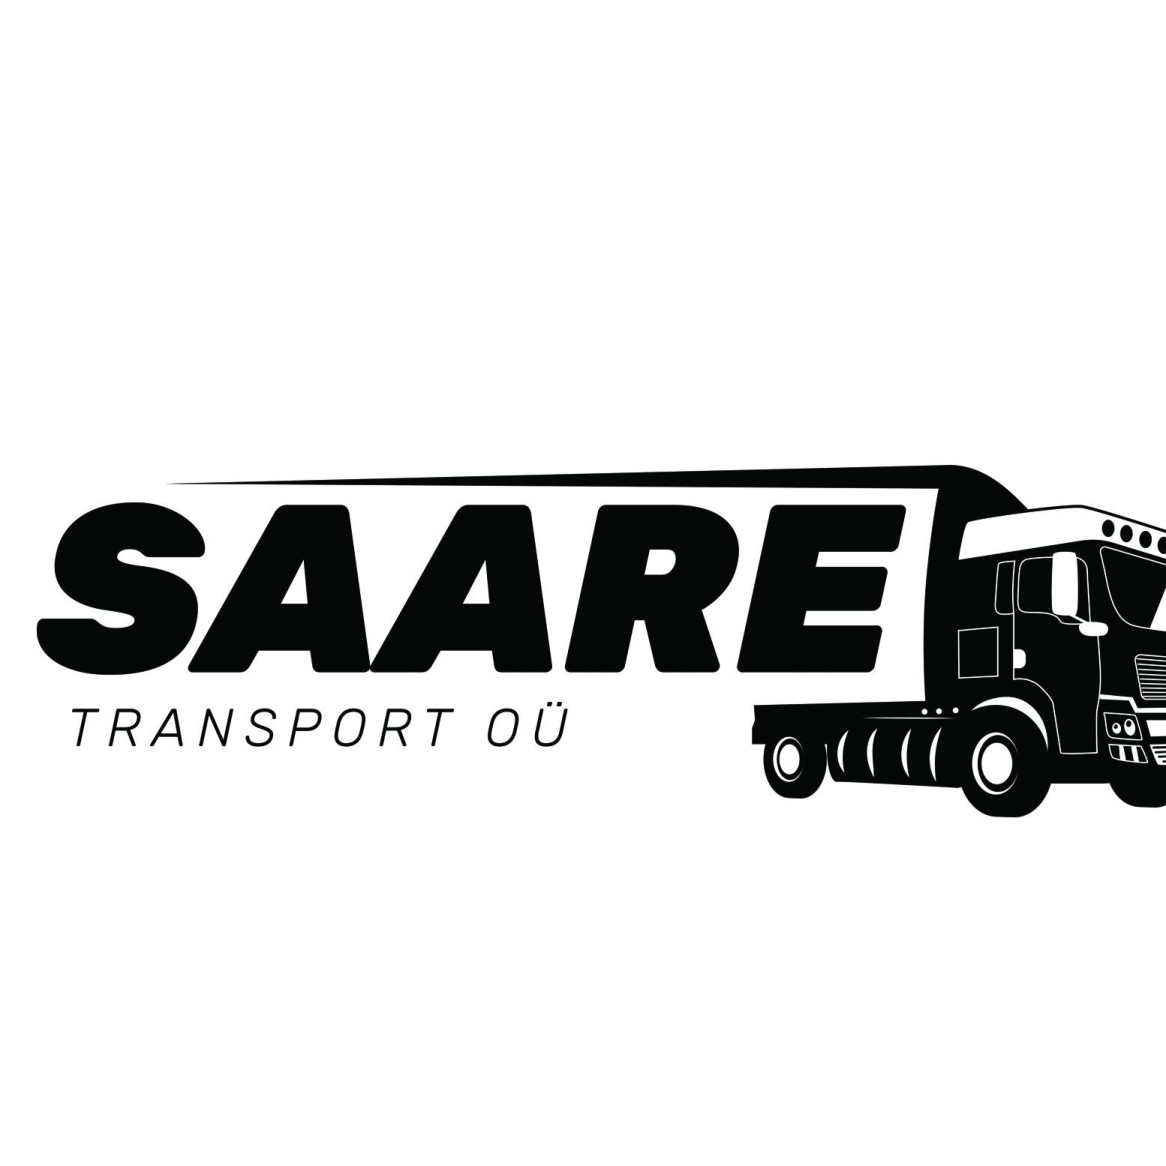 SAARE TRANSPORT OÜ - Moving Forward Together!